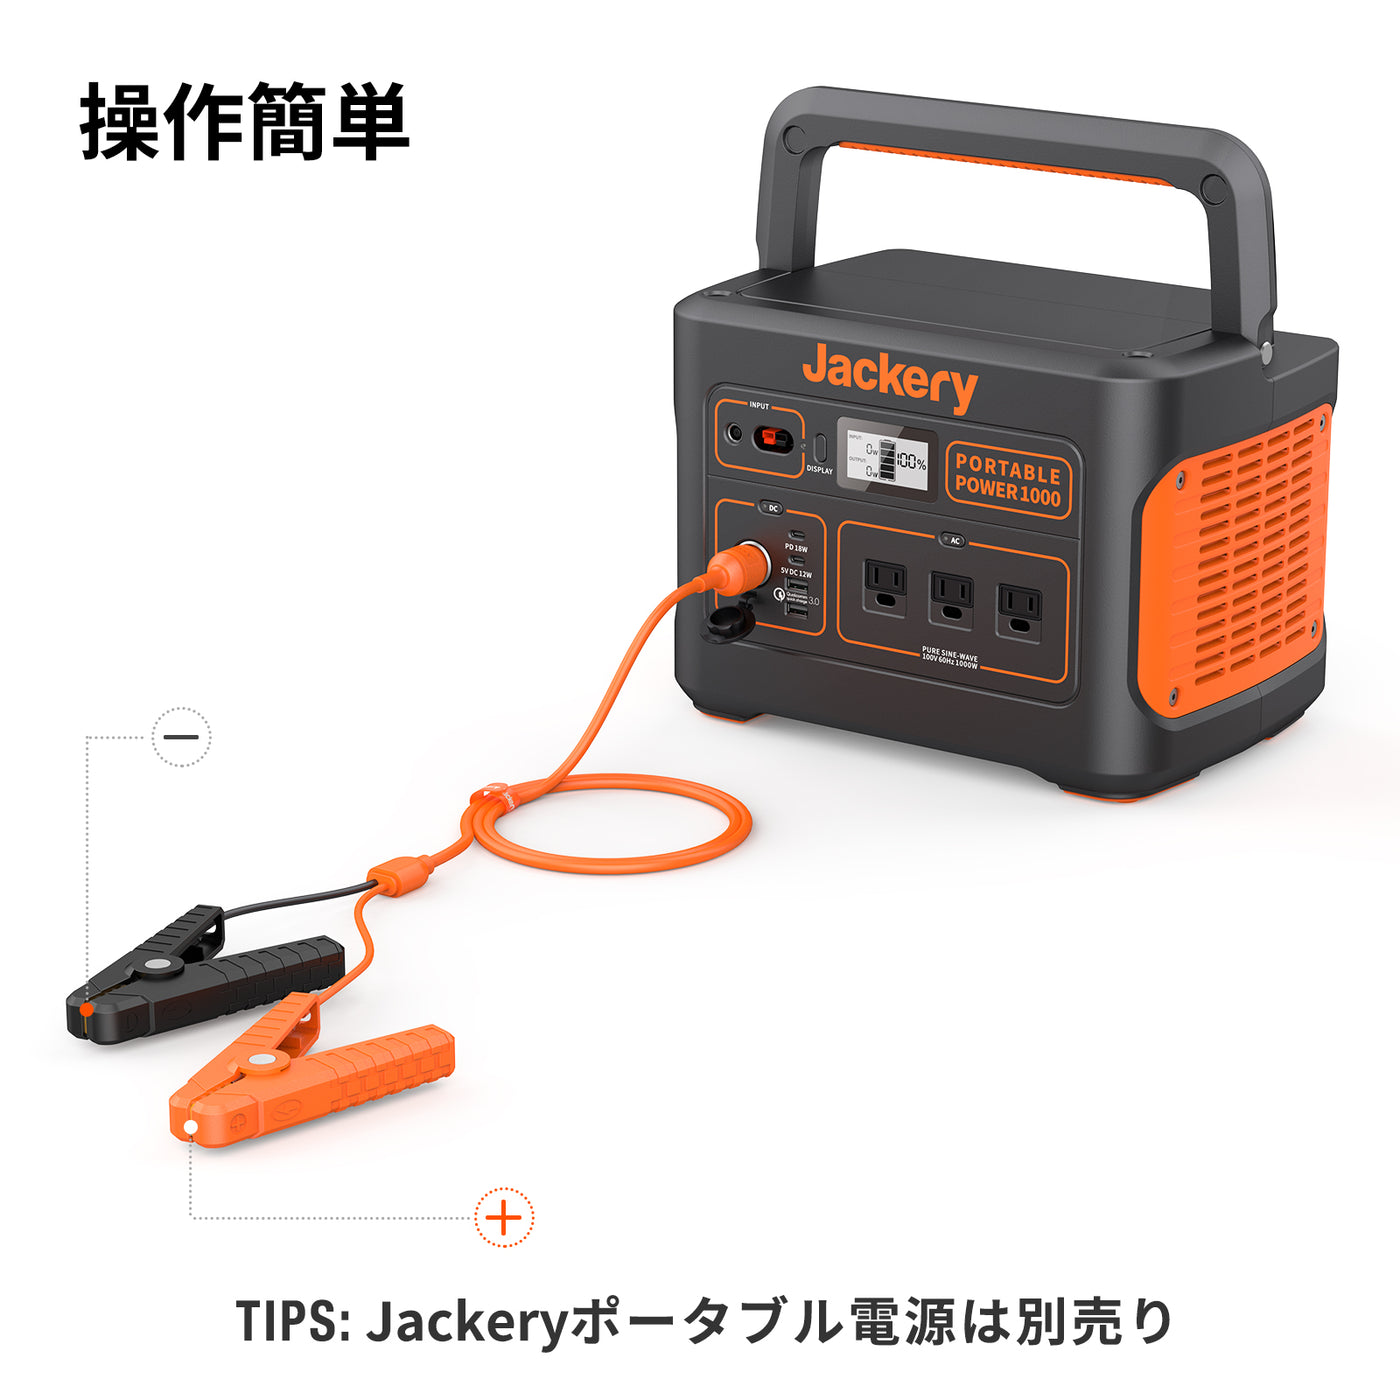 Jackery ポータブル電源 700Wh - 日用品/生活雑貨/旅行